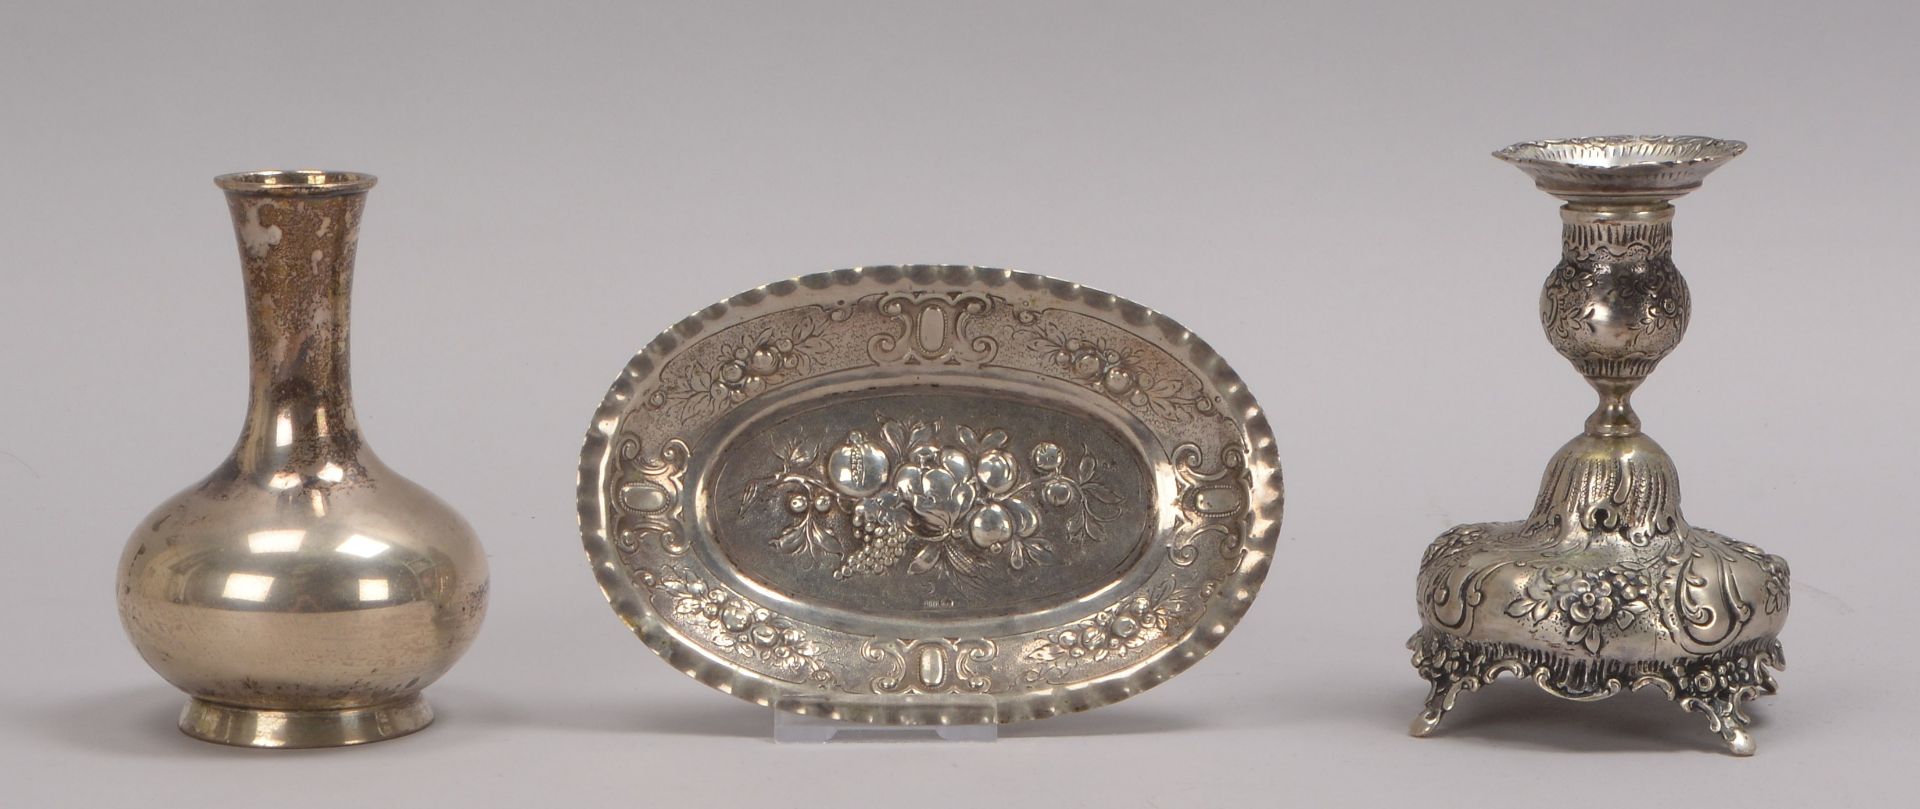 Kleines Tischsilber-Konvolut, 3 barocke Teile, verschiedene Silbergehalte: 800 und 835 Silber, jewei